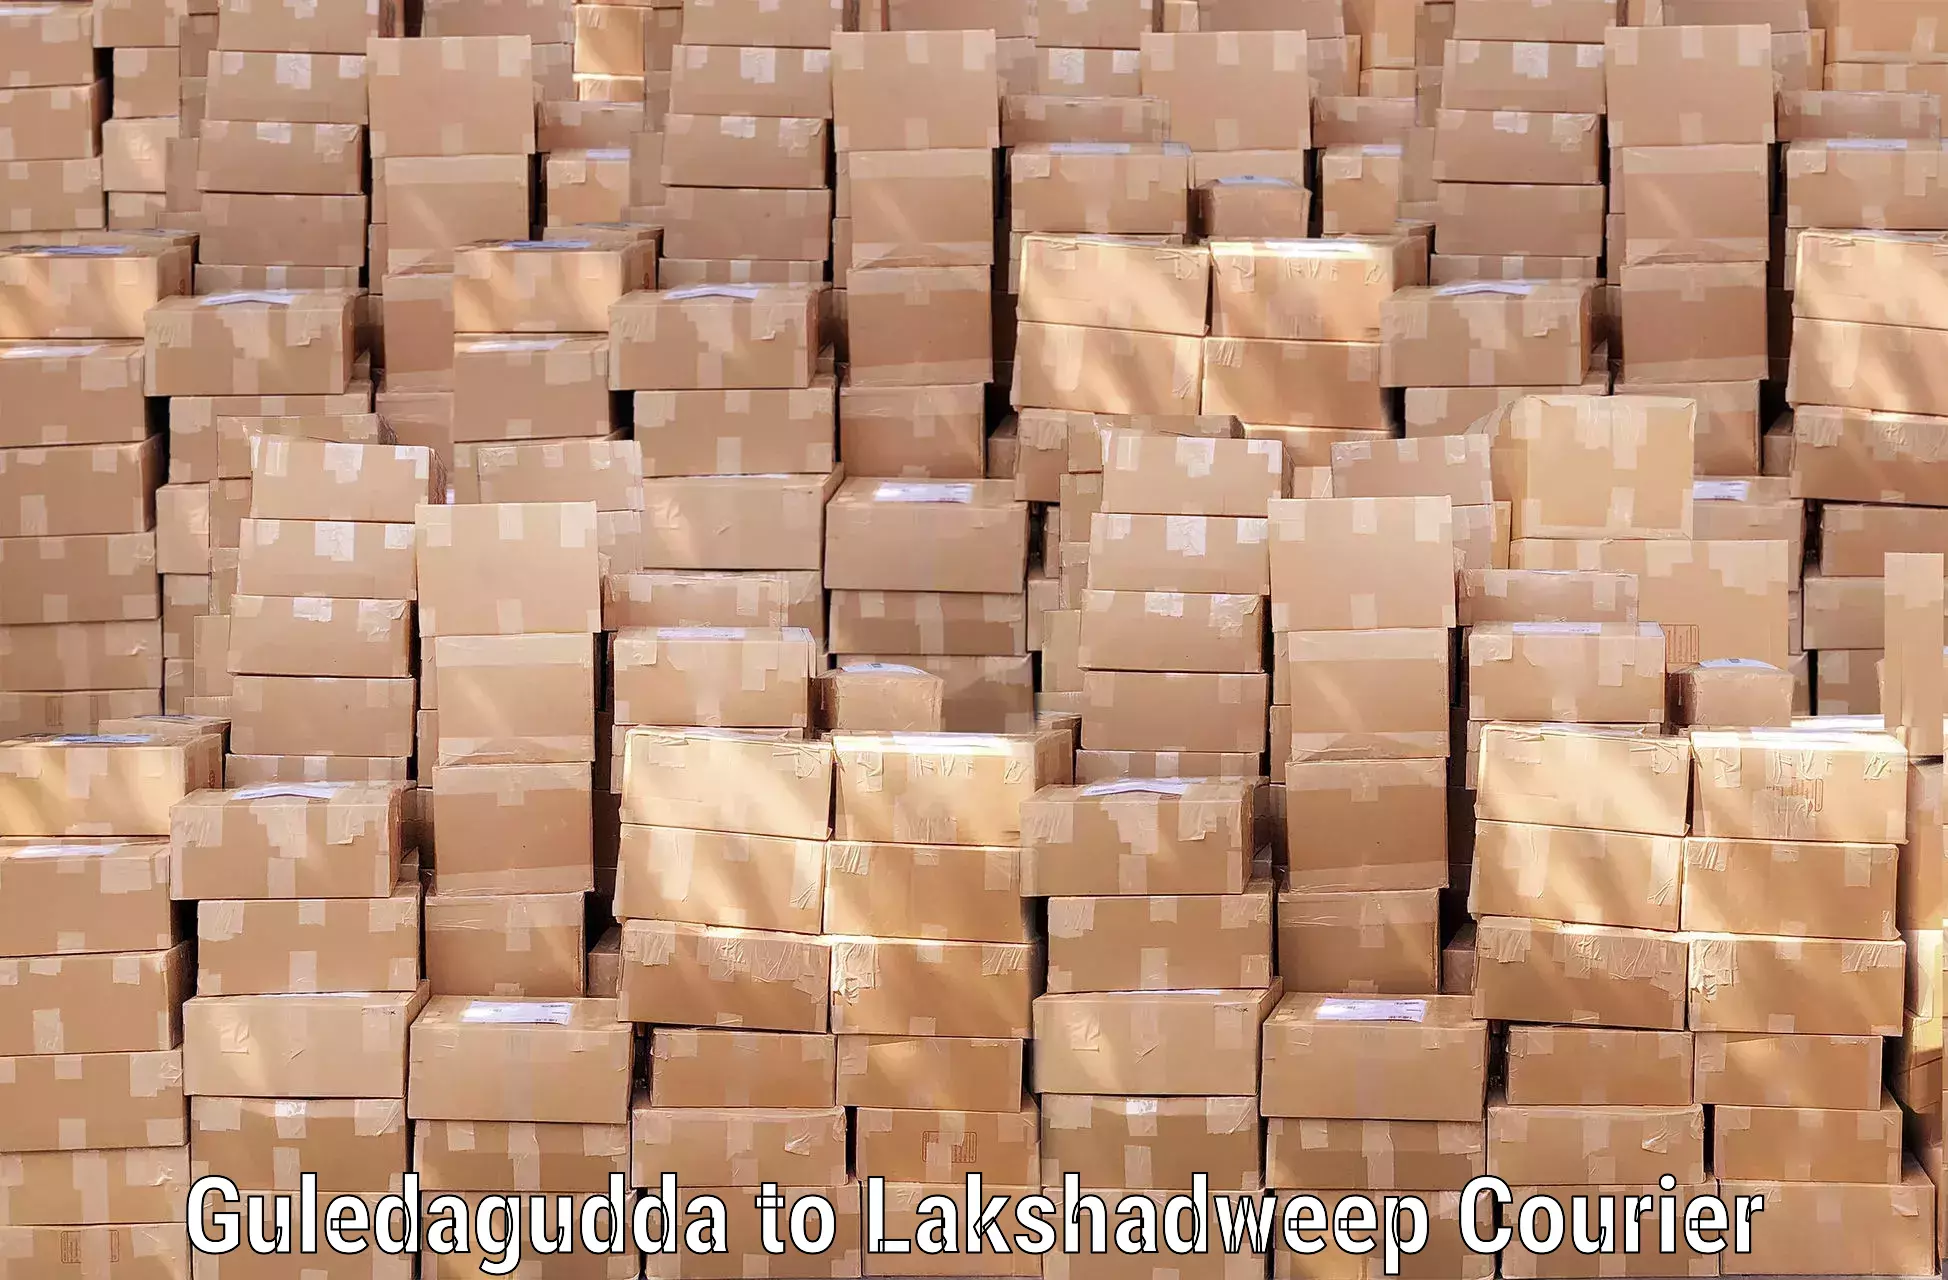 Baggage transport management Guledagudda to Lakshadweep